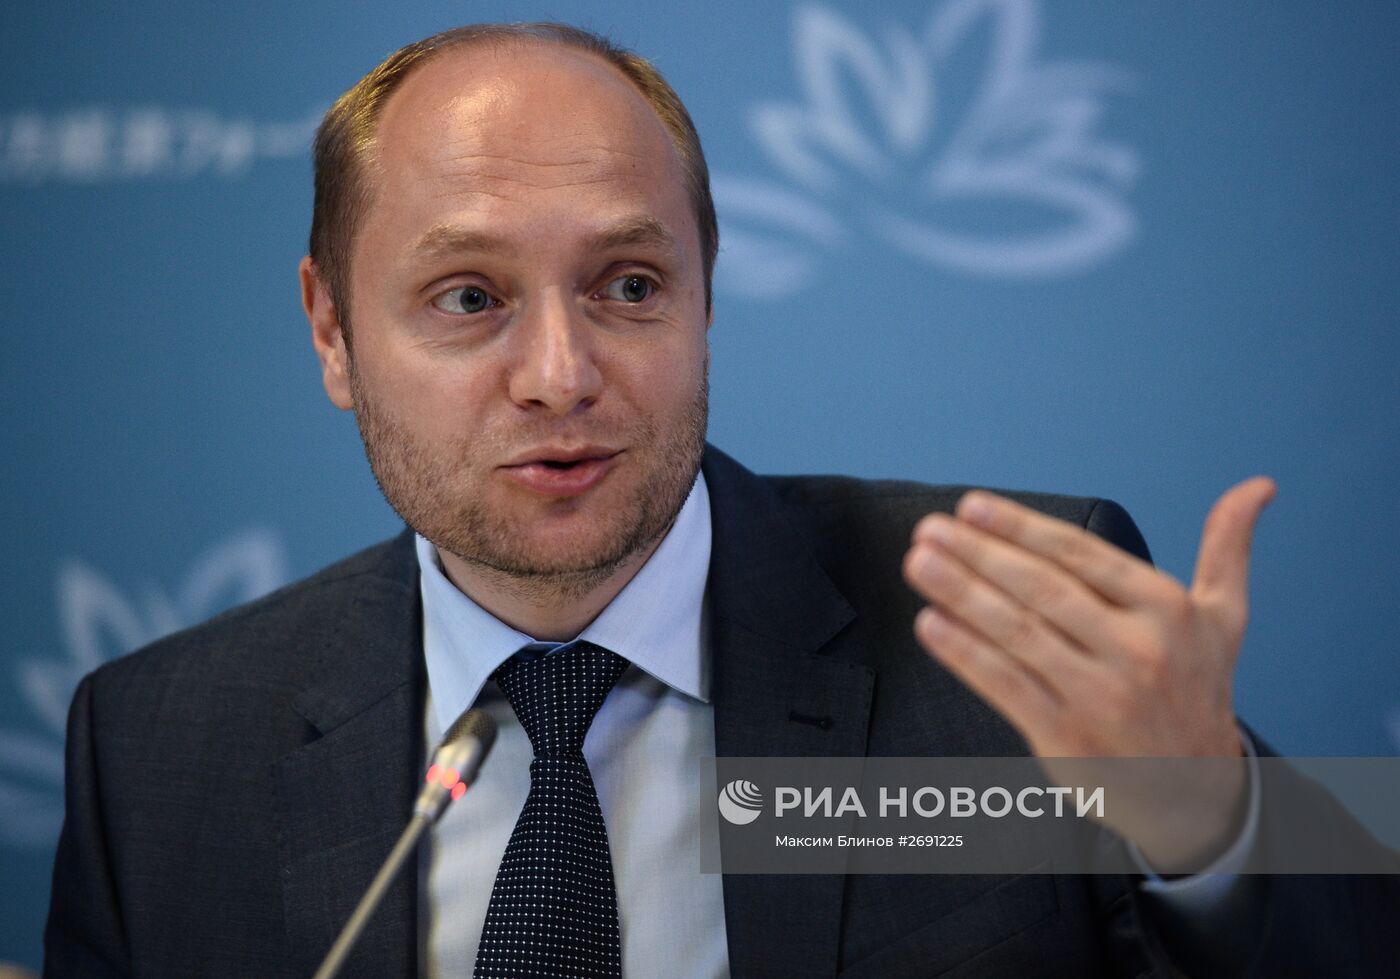 Брифинг министра РФ по развитию Дальнего Востока Александра Галушки